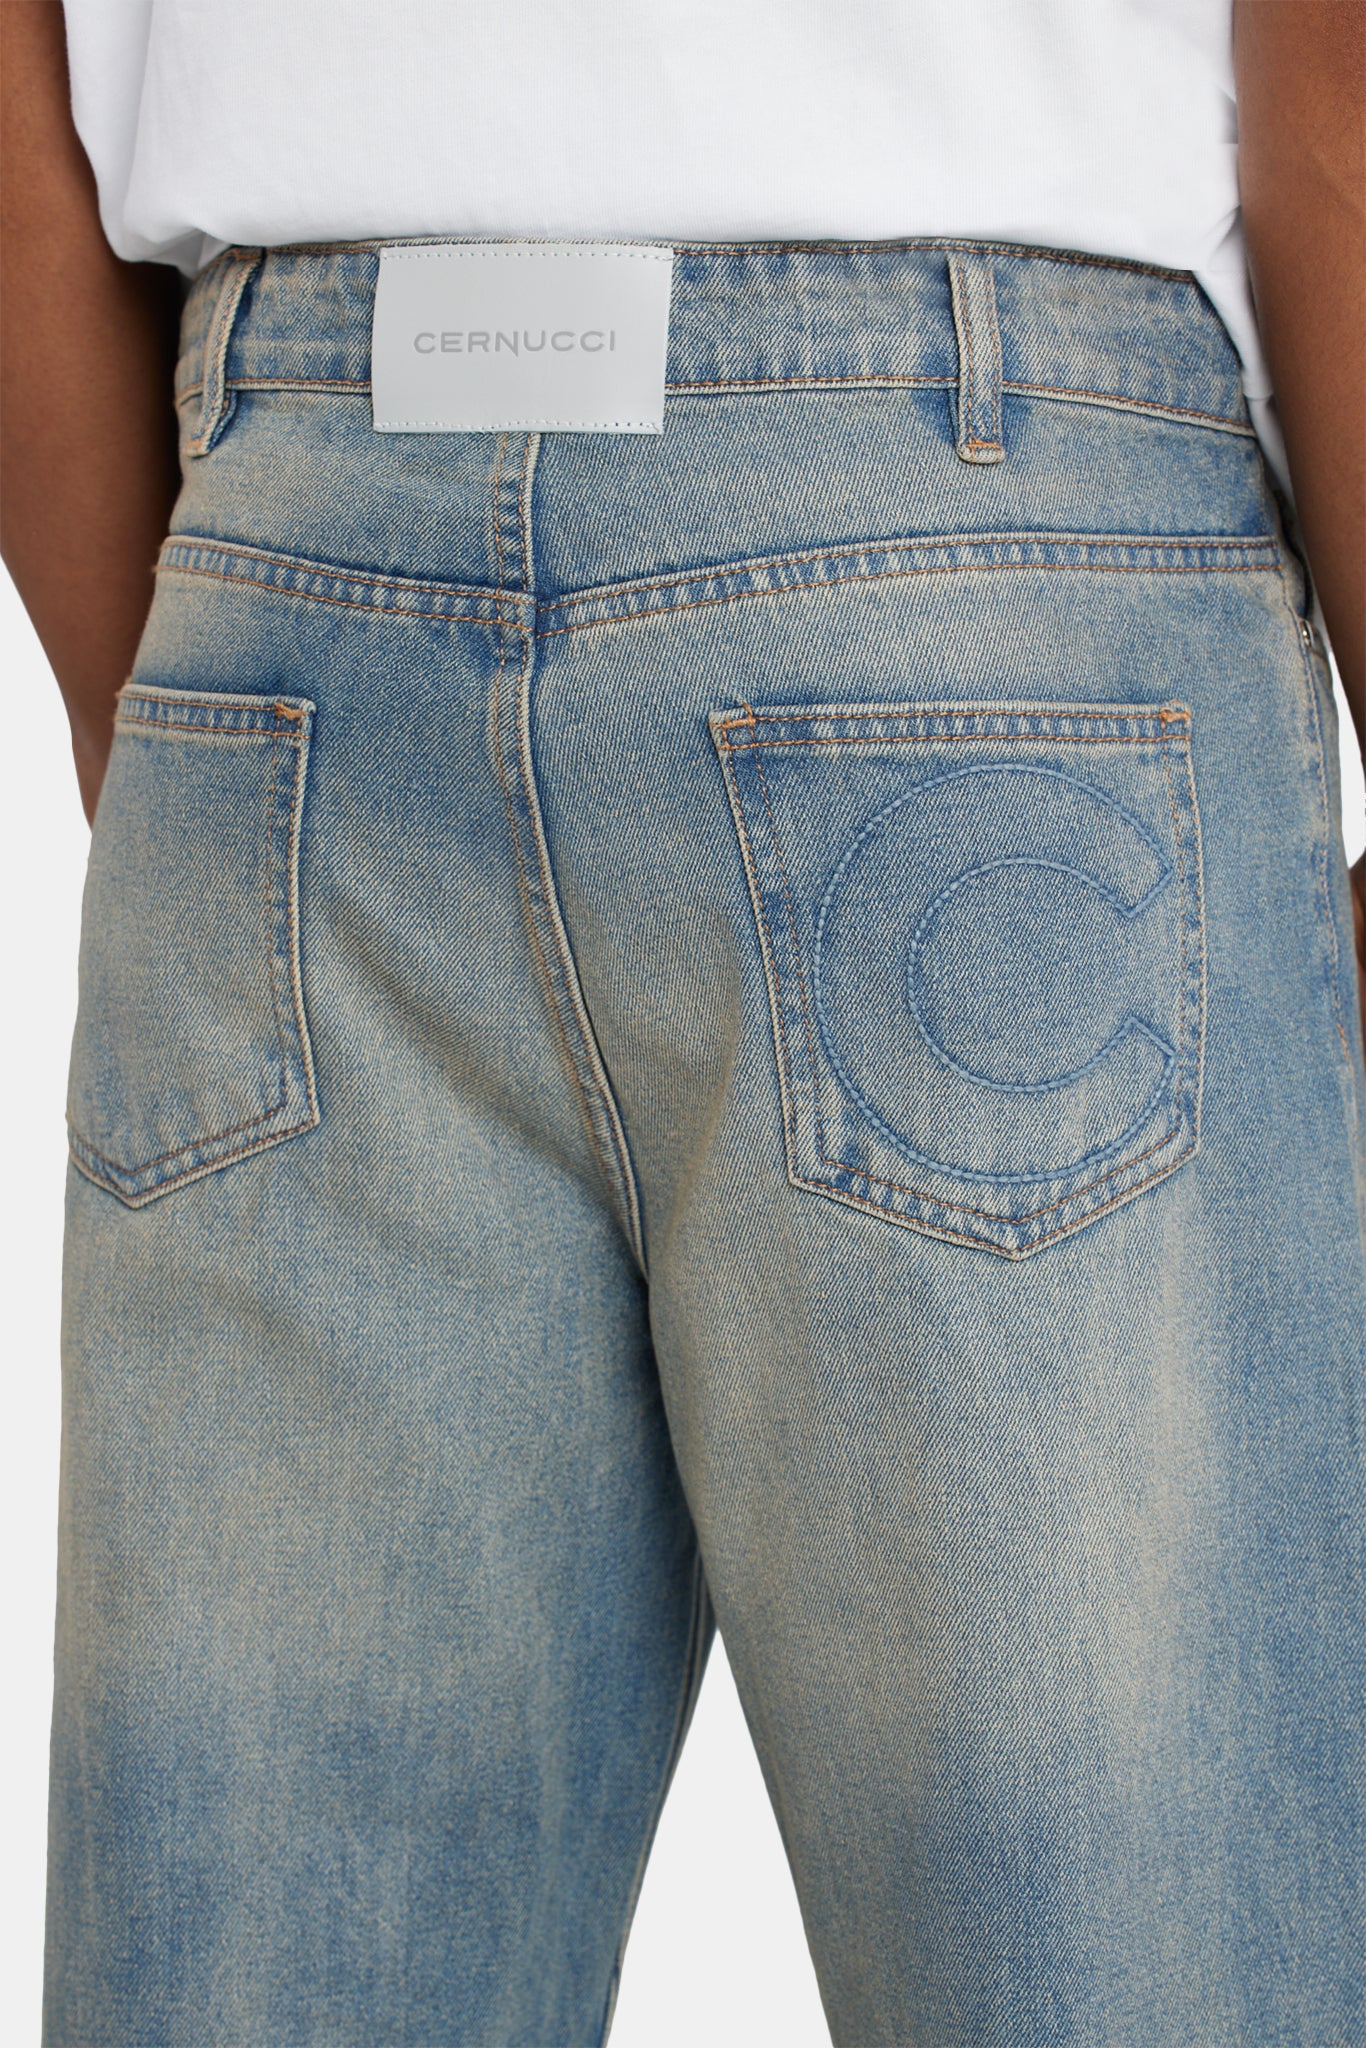 Baggy Fit Jeans - Antique Wash | Mens Denim | Shop Jeans at CERNUCCI ...